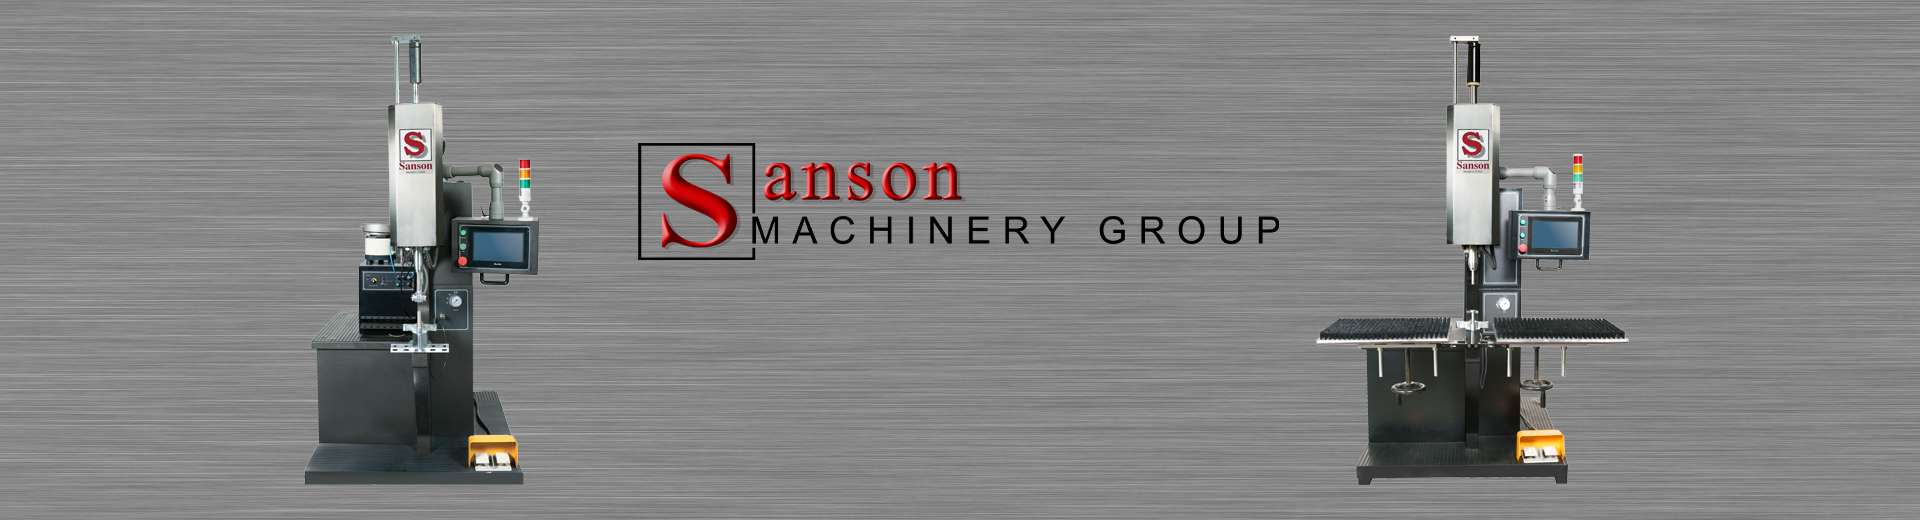 Sanson Machinery Group Machinery